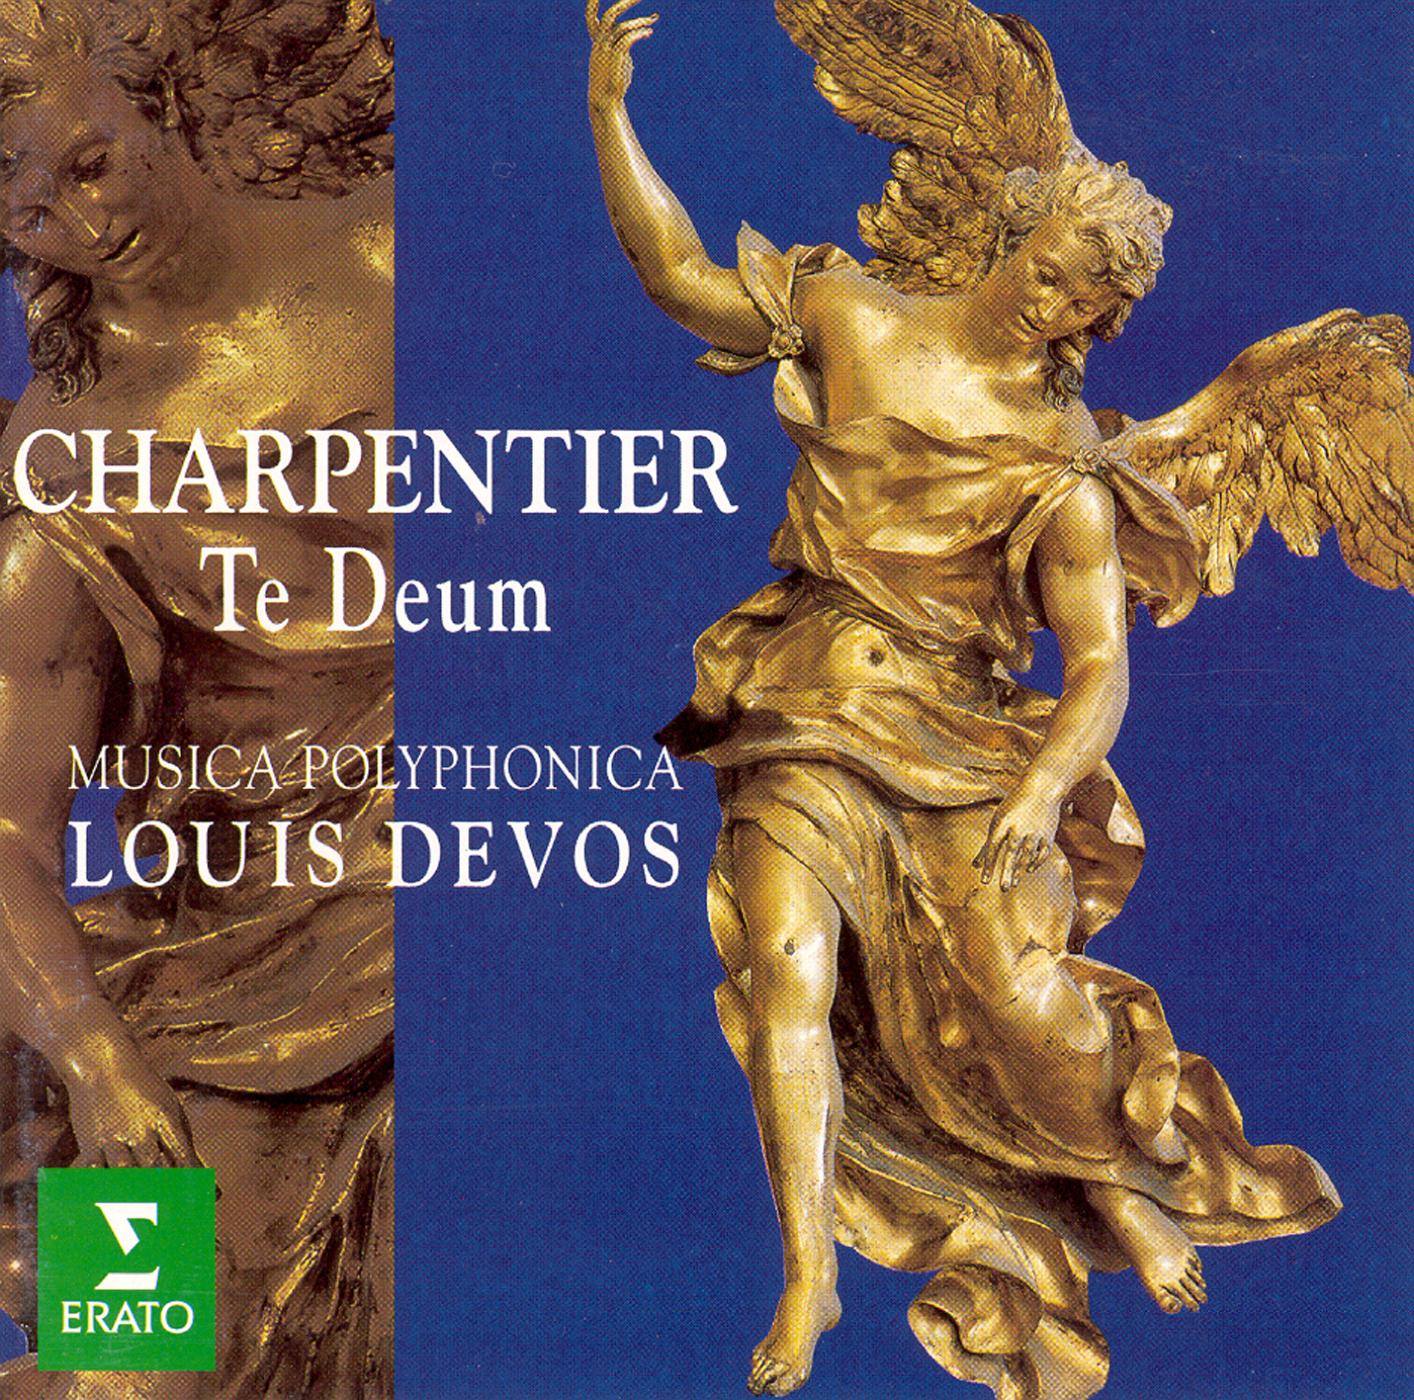 Charpentier:Canticum in honorem Sancti Ludovici regis galliae H365 : X Egredimini populi fideles